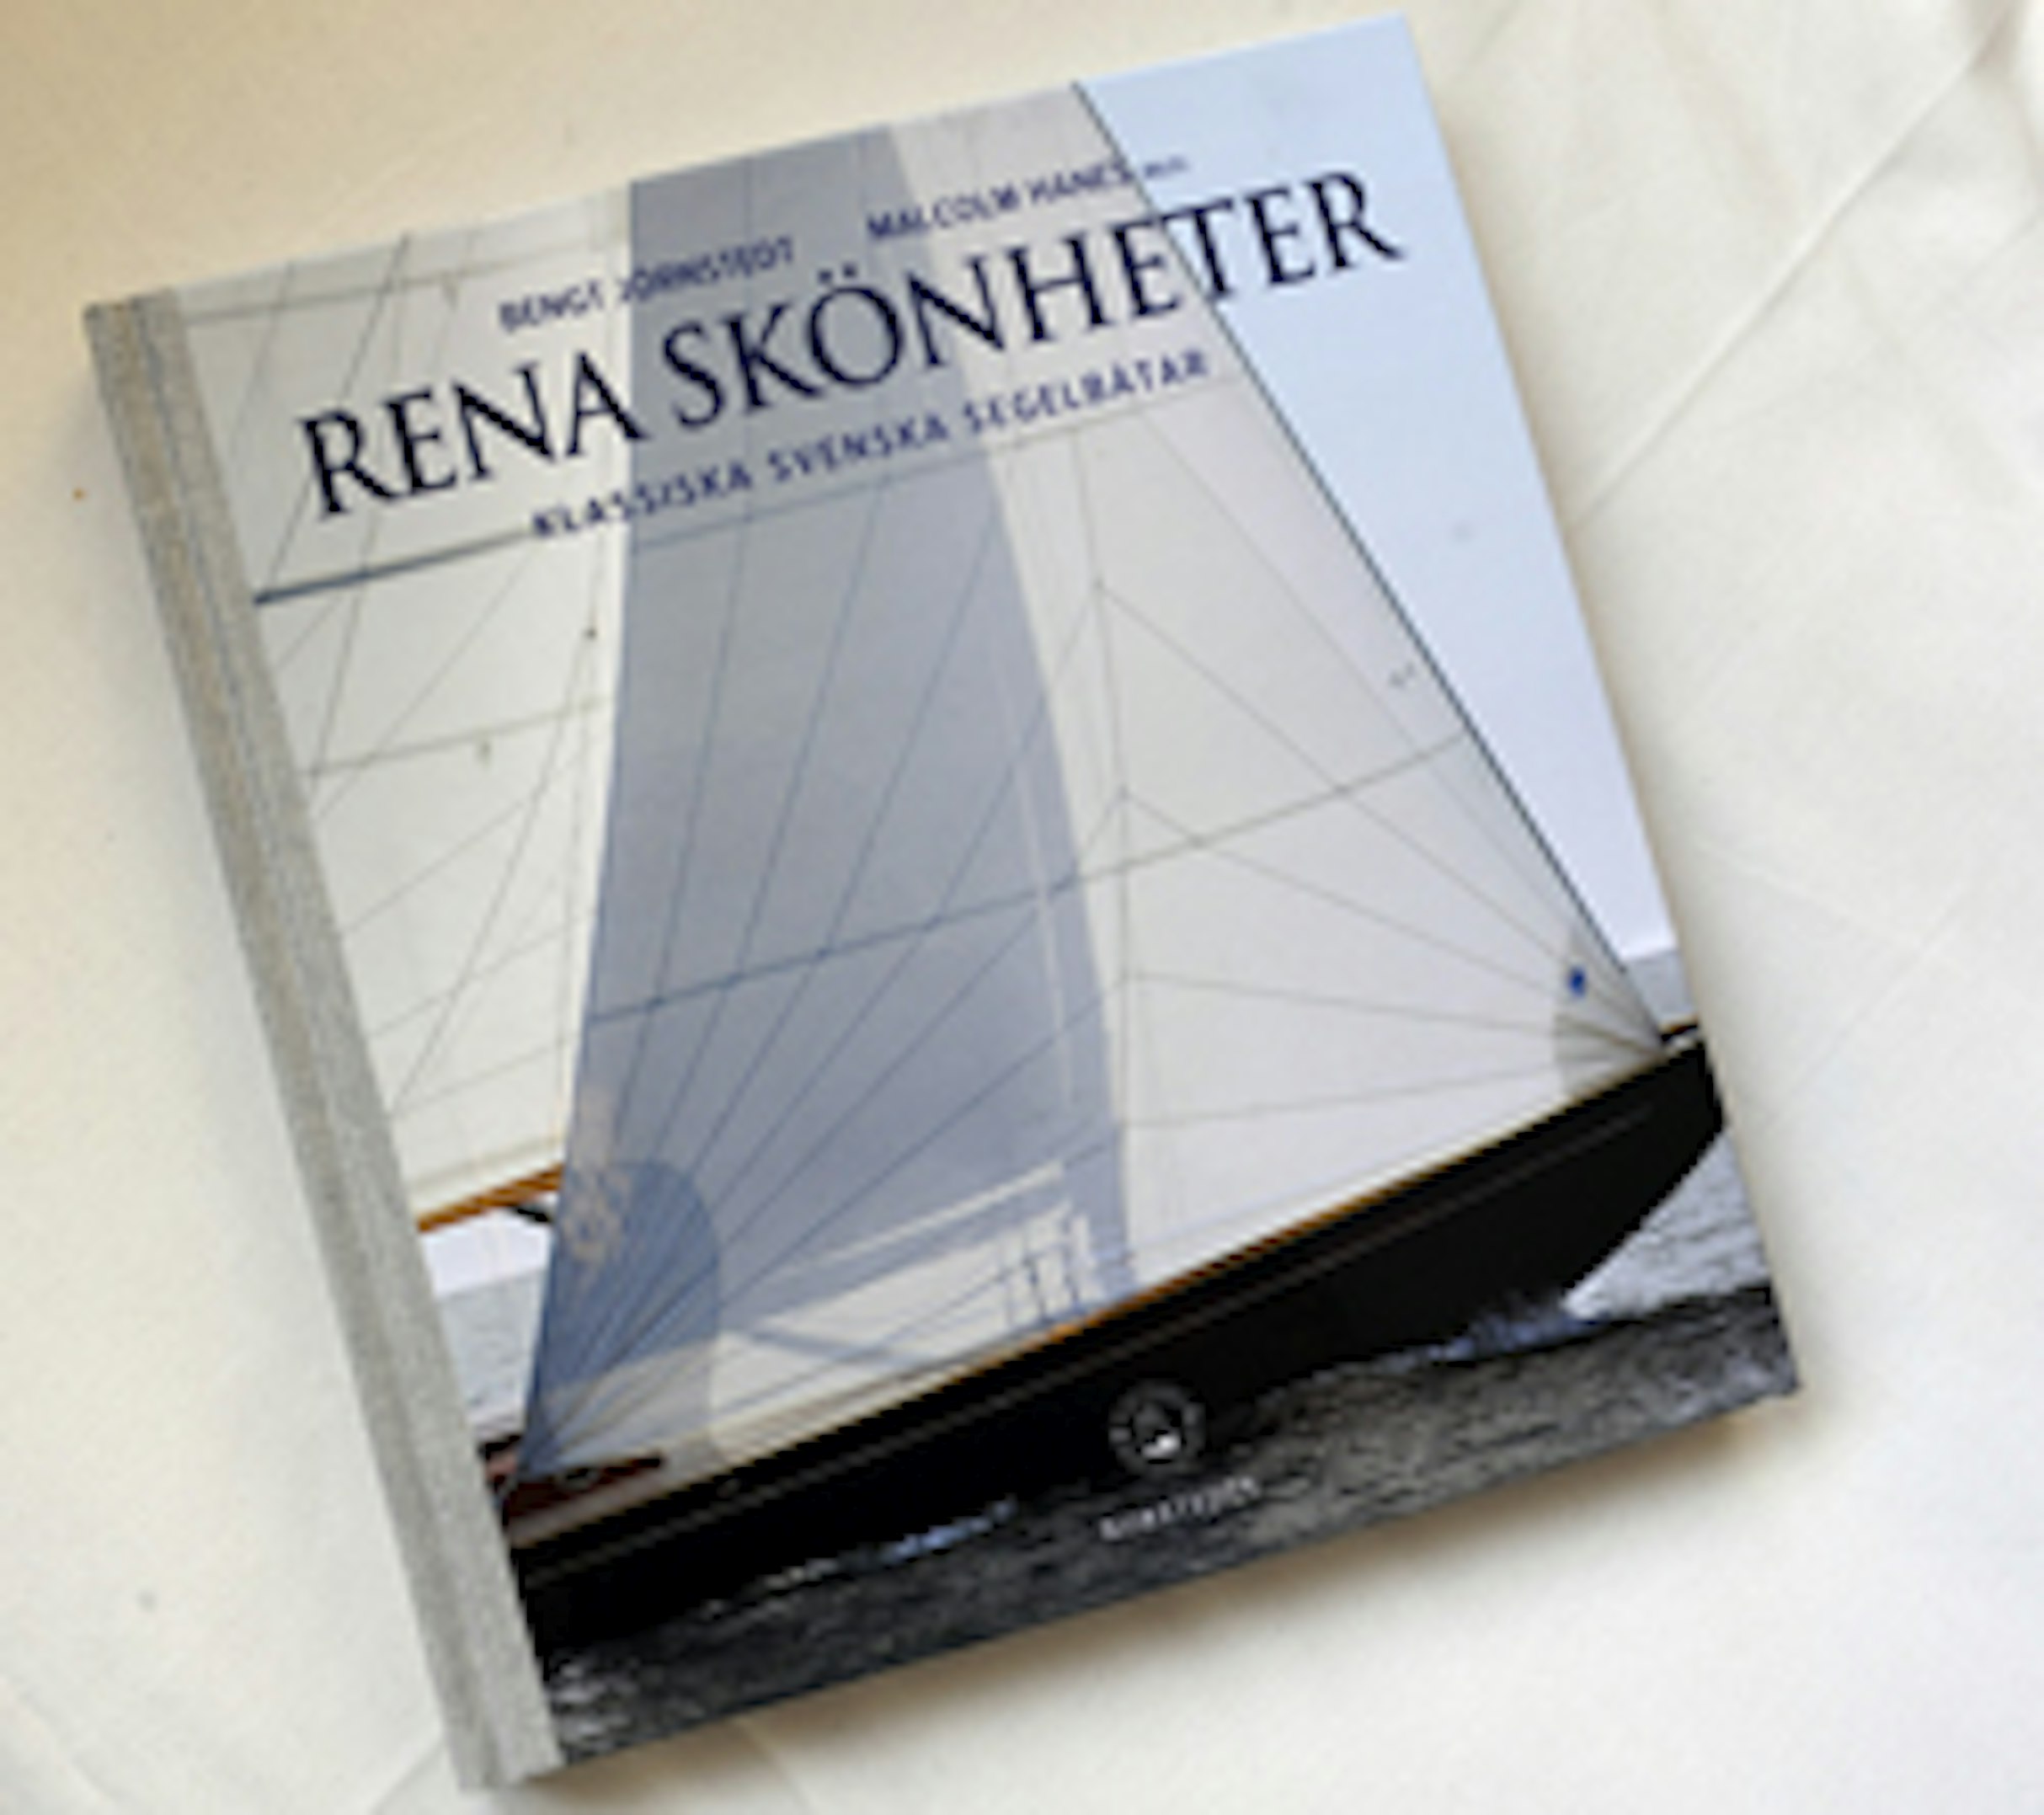 Rena skönheter är en bok om svenska båtklassiker